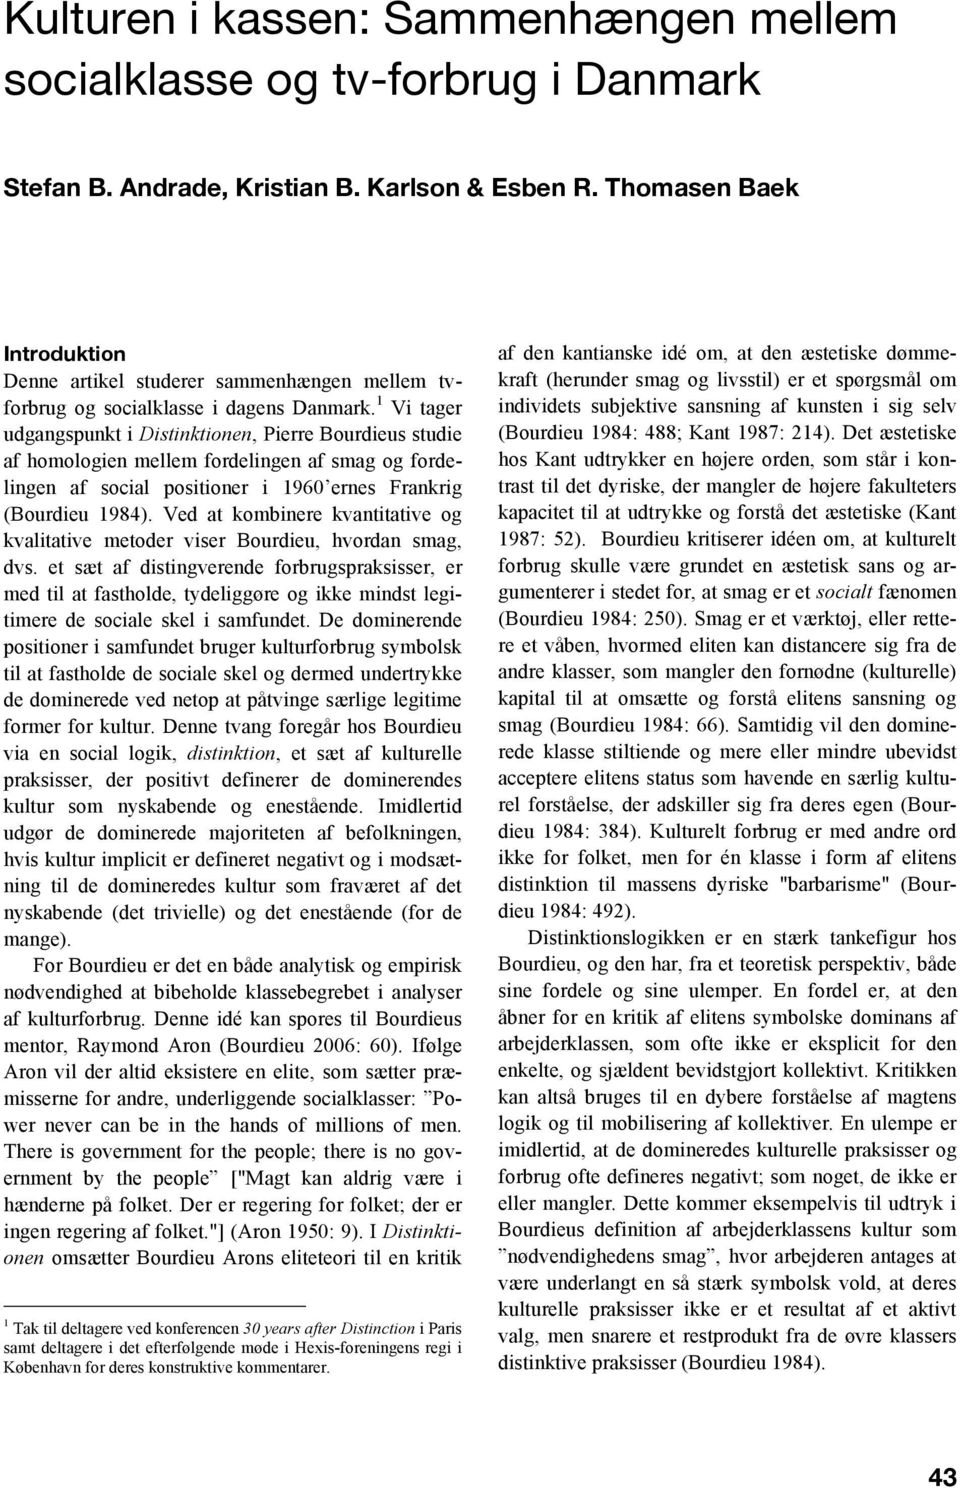 1 Vi tager udgangspunkt i Distinktionen, Pierre Bourdieus studie af homologien mellem fordelingen af smag og fordelingen af social positioner i 1960 ernes Frankrig (Bourdieu 1984).